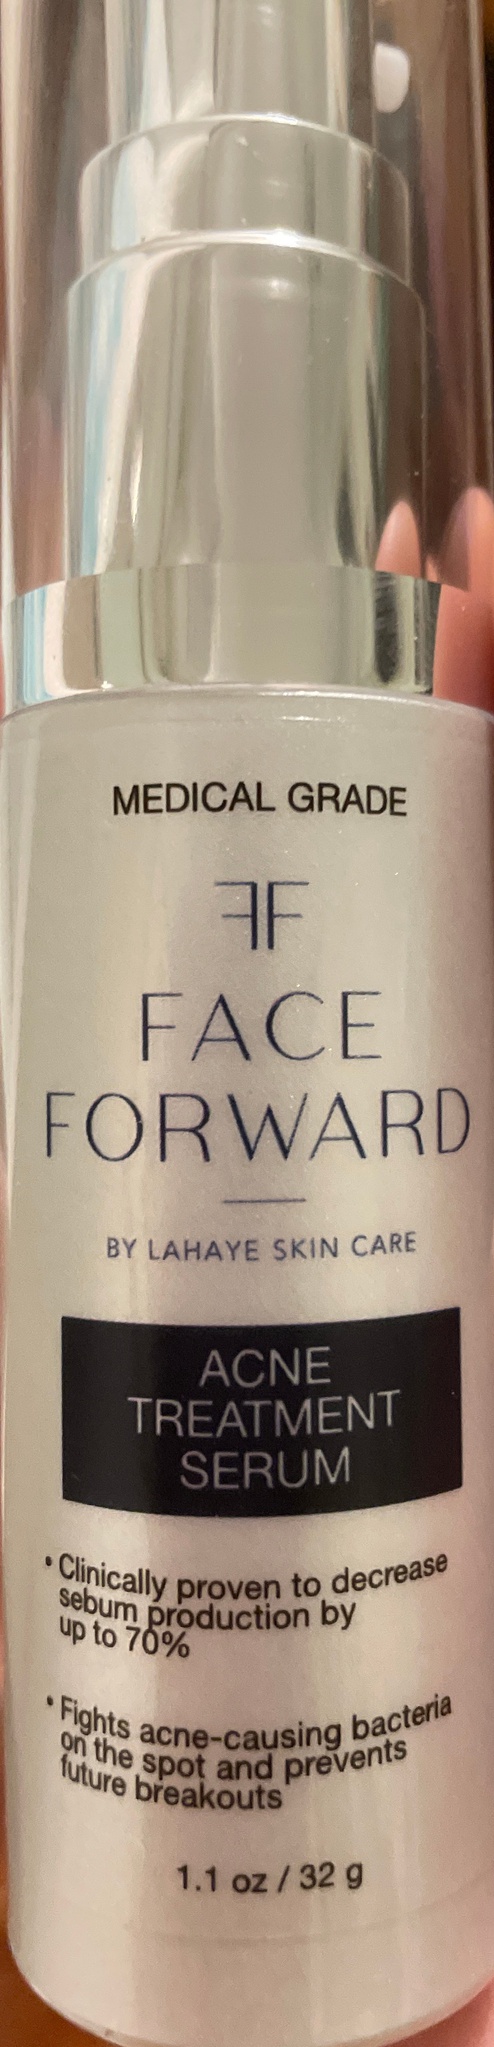 face forward Acne Treatment Serum